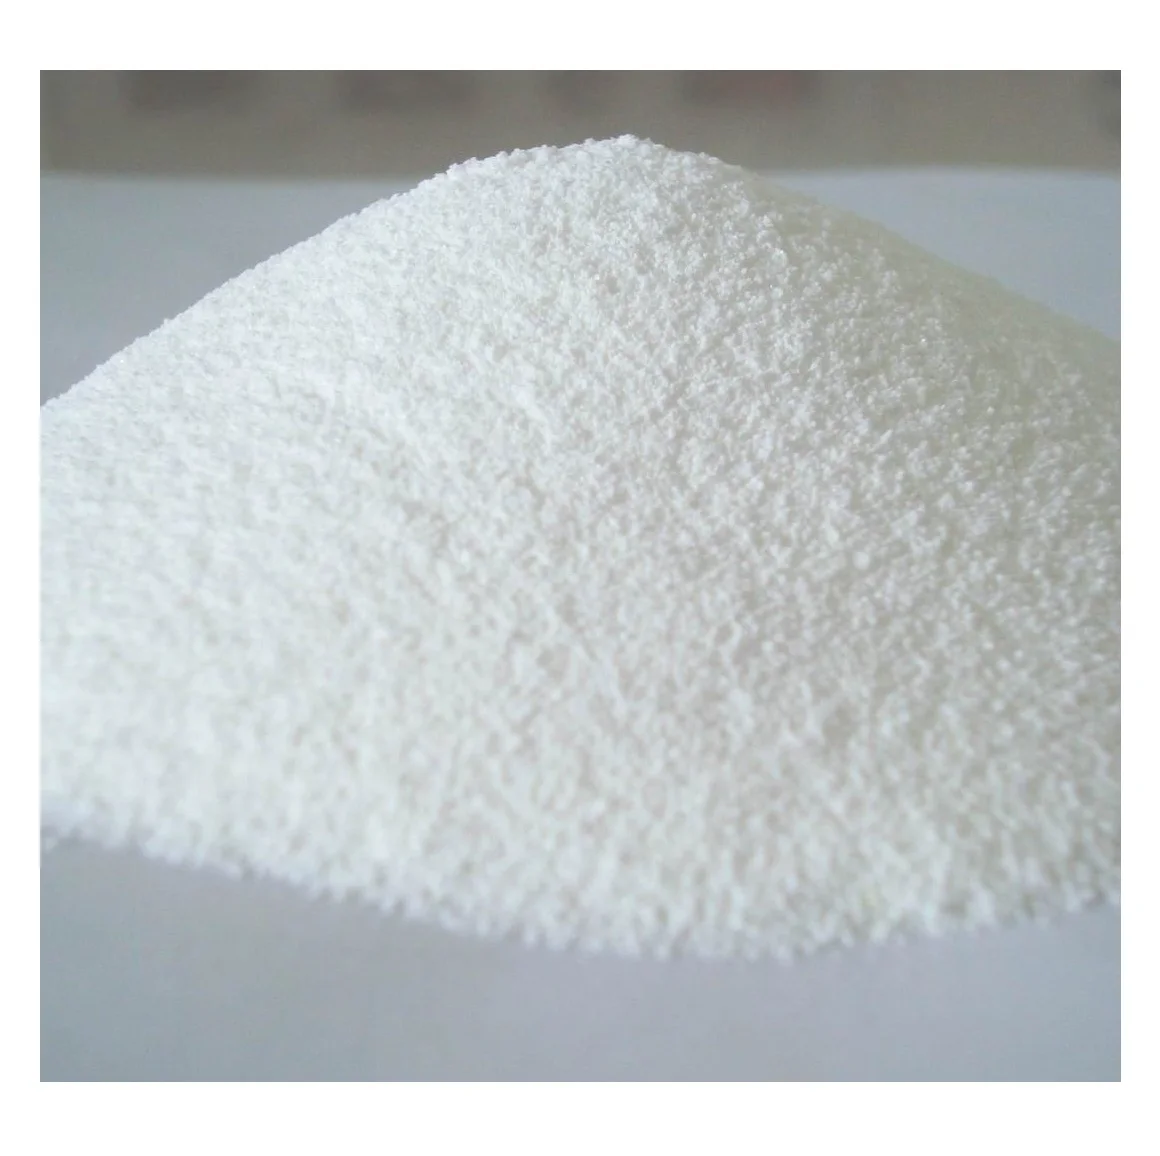 sulphate of potash/potassium sulphate/potassium sulfate K2SO4 white granular